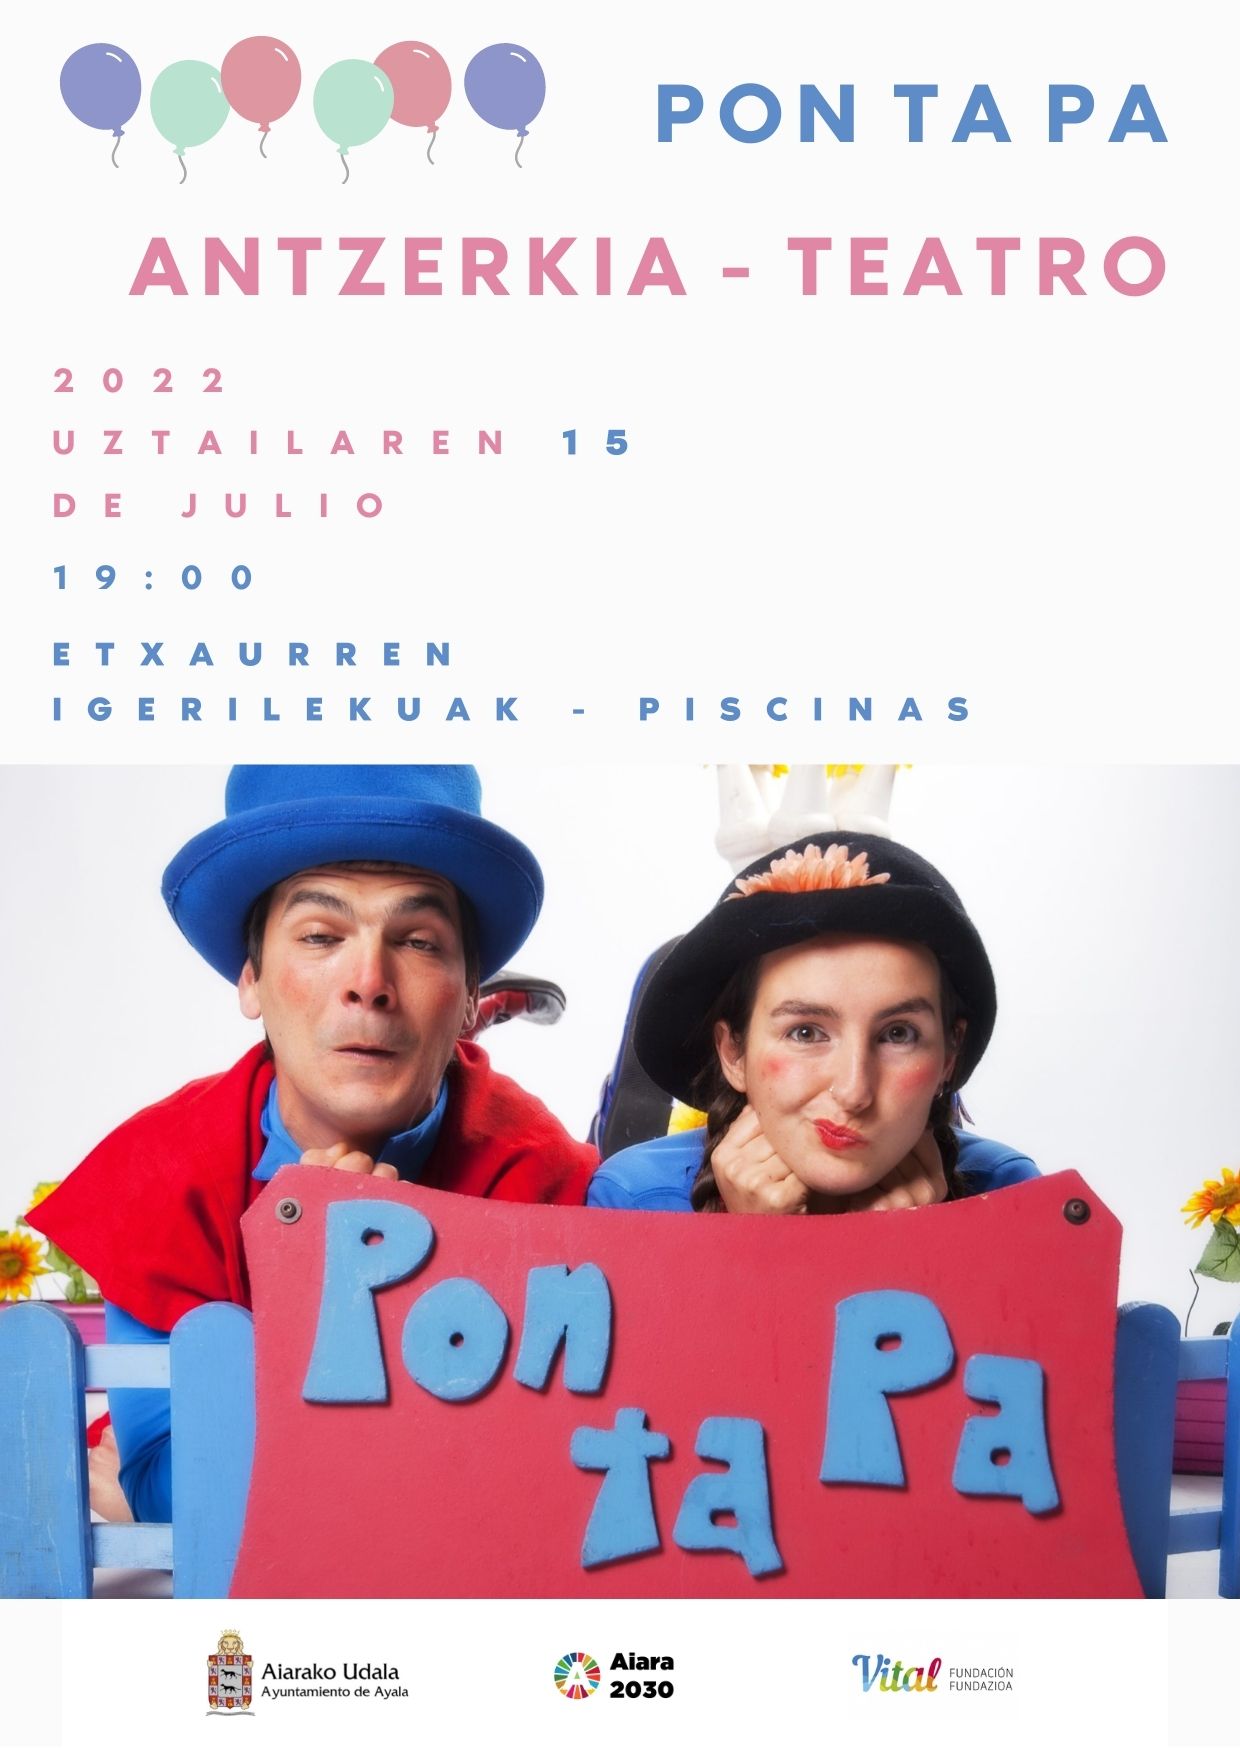 Teatro - PONTAPA